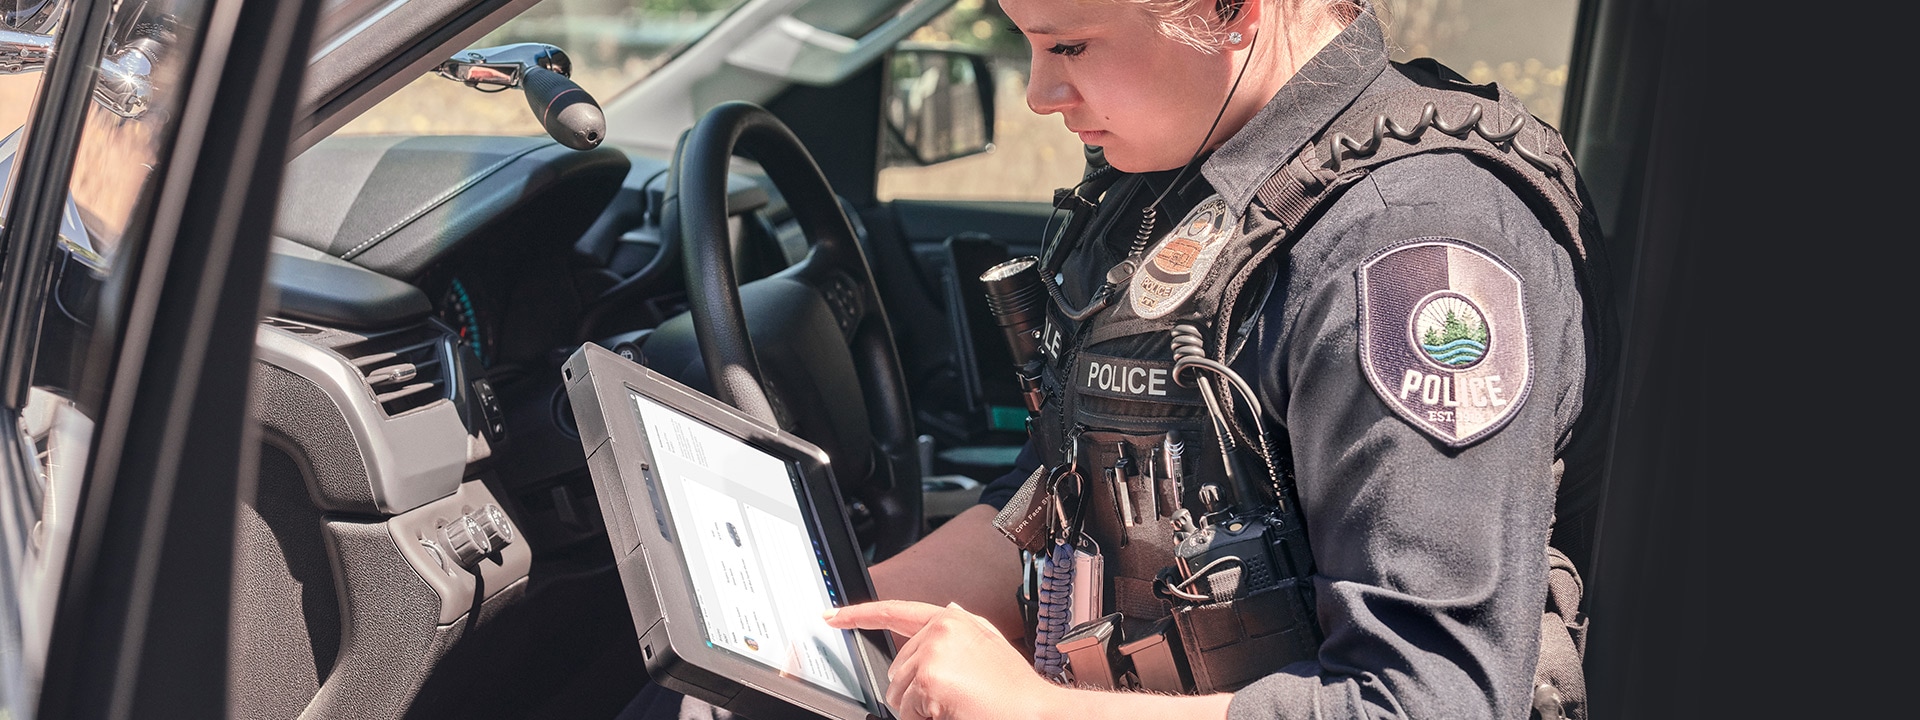 كما هو موضح، شرطية جالسة في مقعد الراكب في الطراد الخاص بها أثناء استخدام جهاز Surface Pro